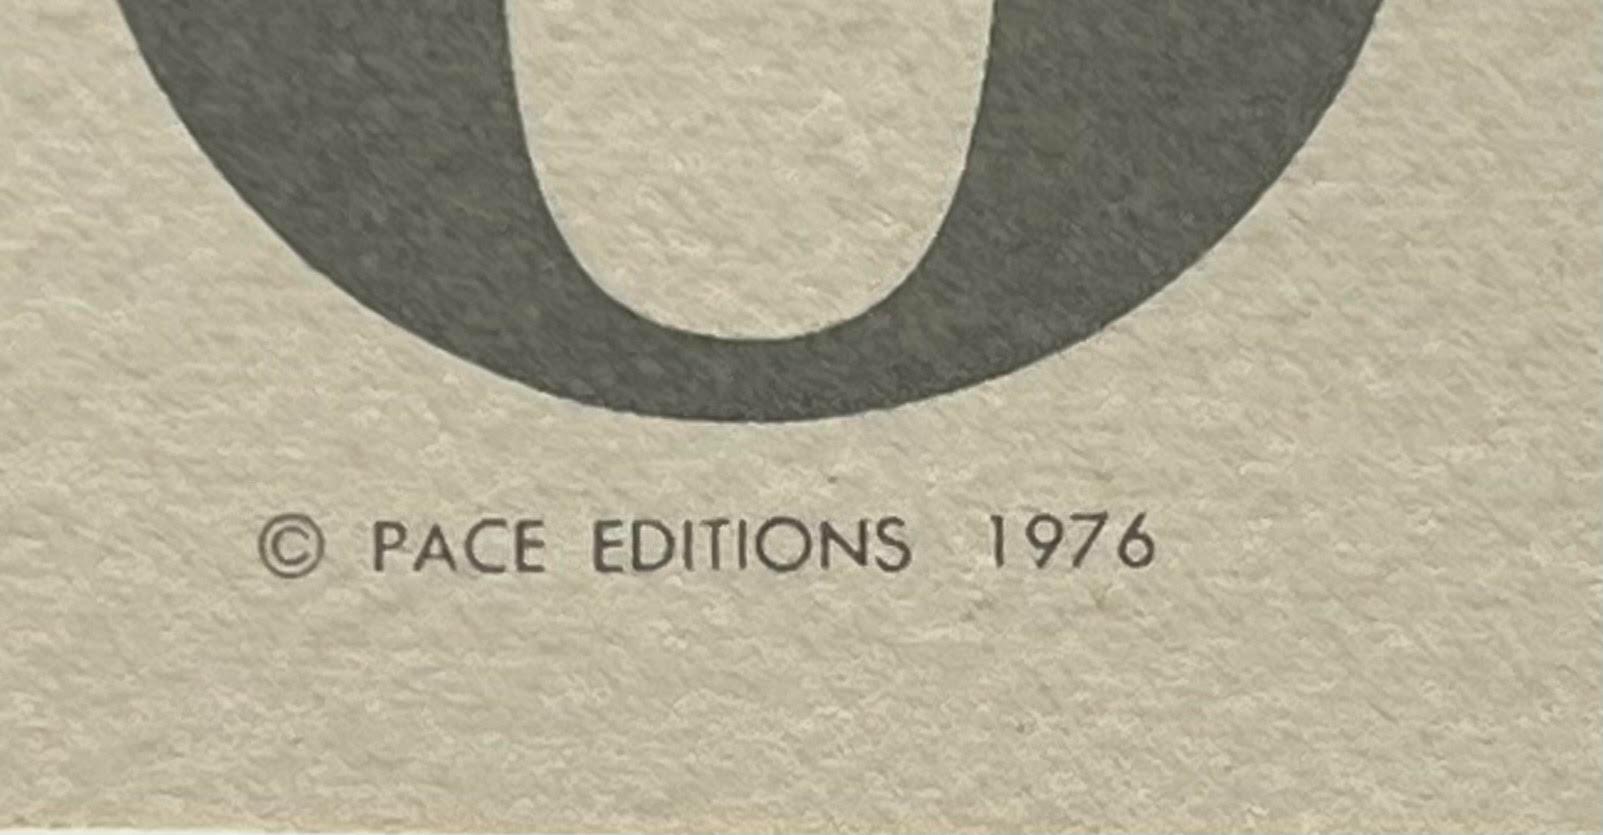 Limitierte Auflage des Williams College Museums-Ausstellungsplakats auf lithografischem Papier  – Print von Jim Dine